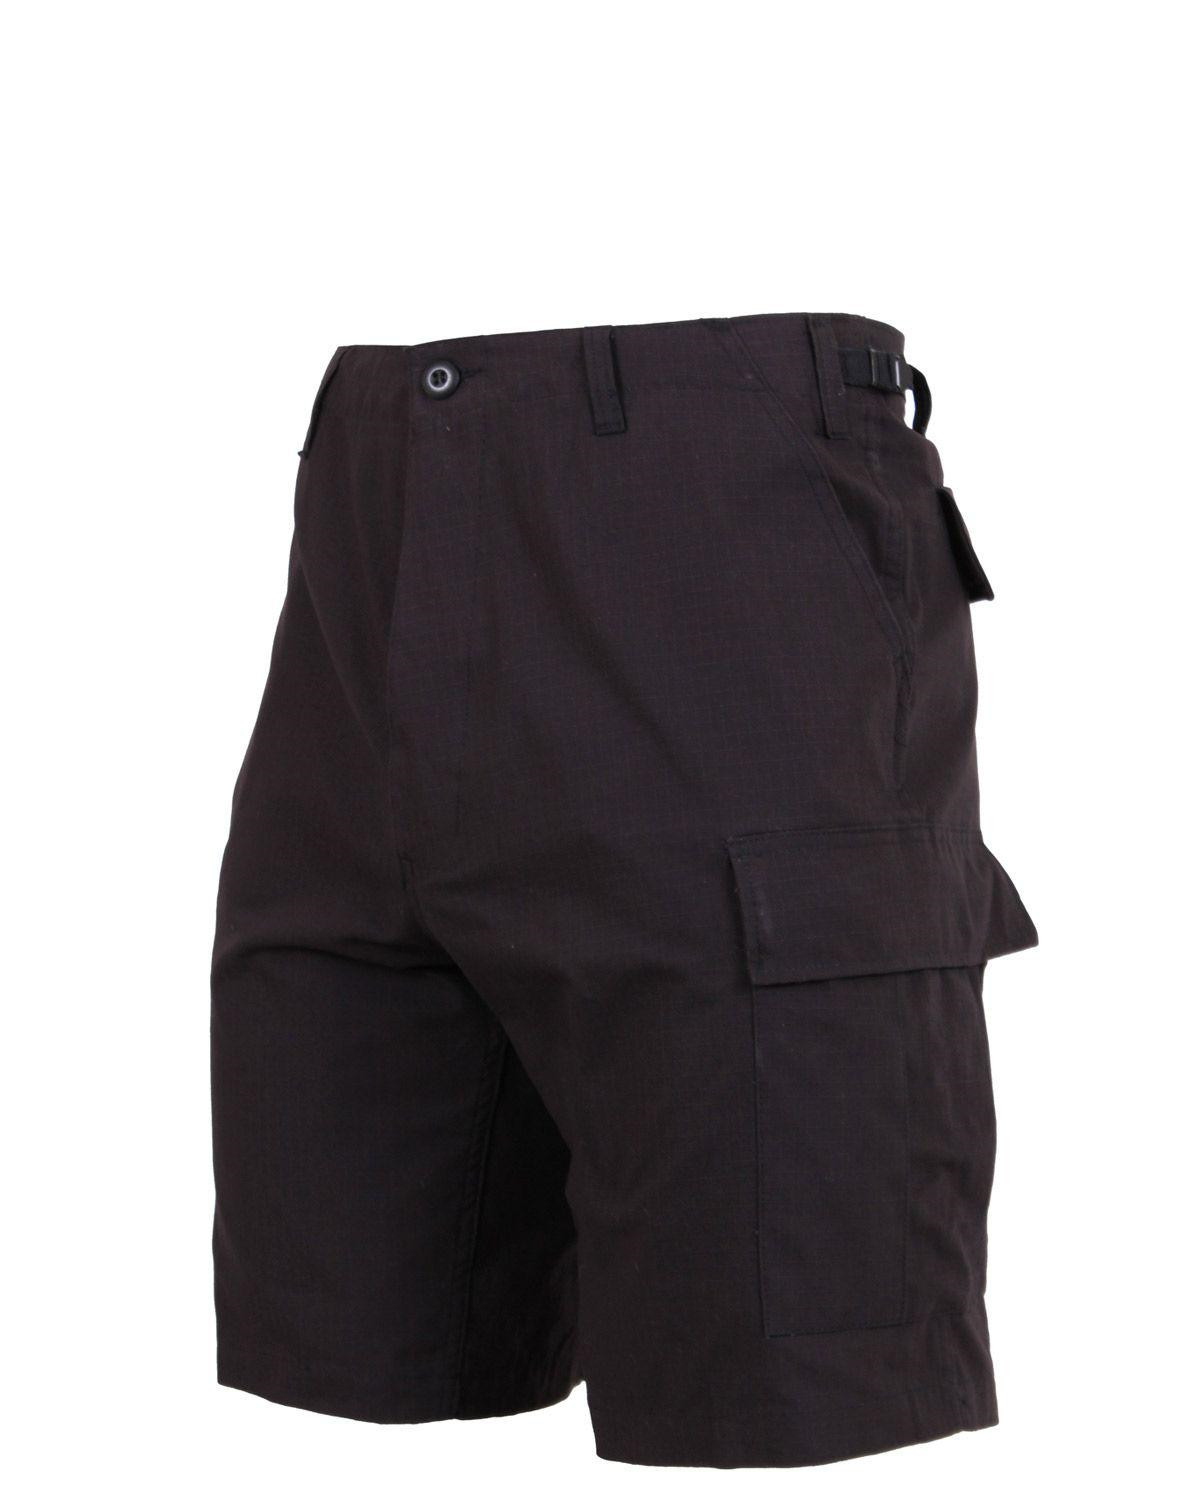 Rothco BDU Shorts i Rip-Stop (Sort, X-Large / 35"-43")